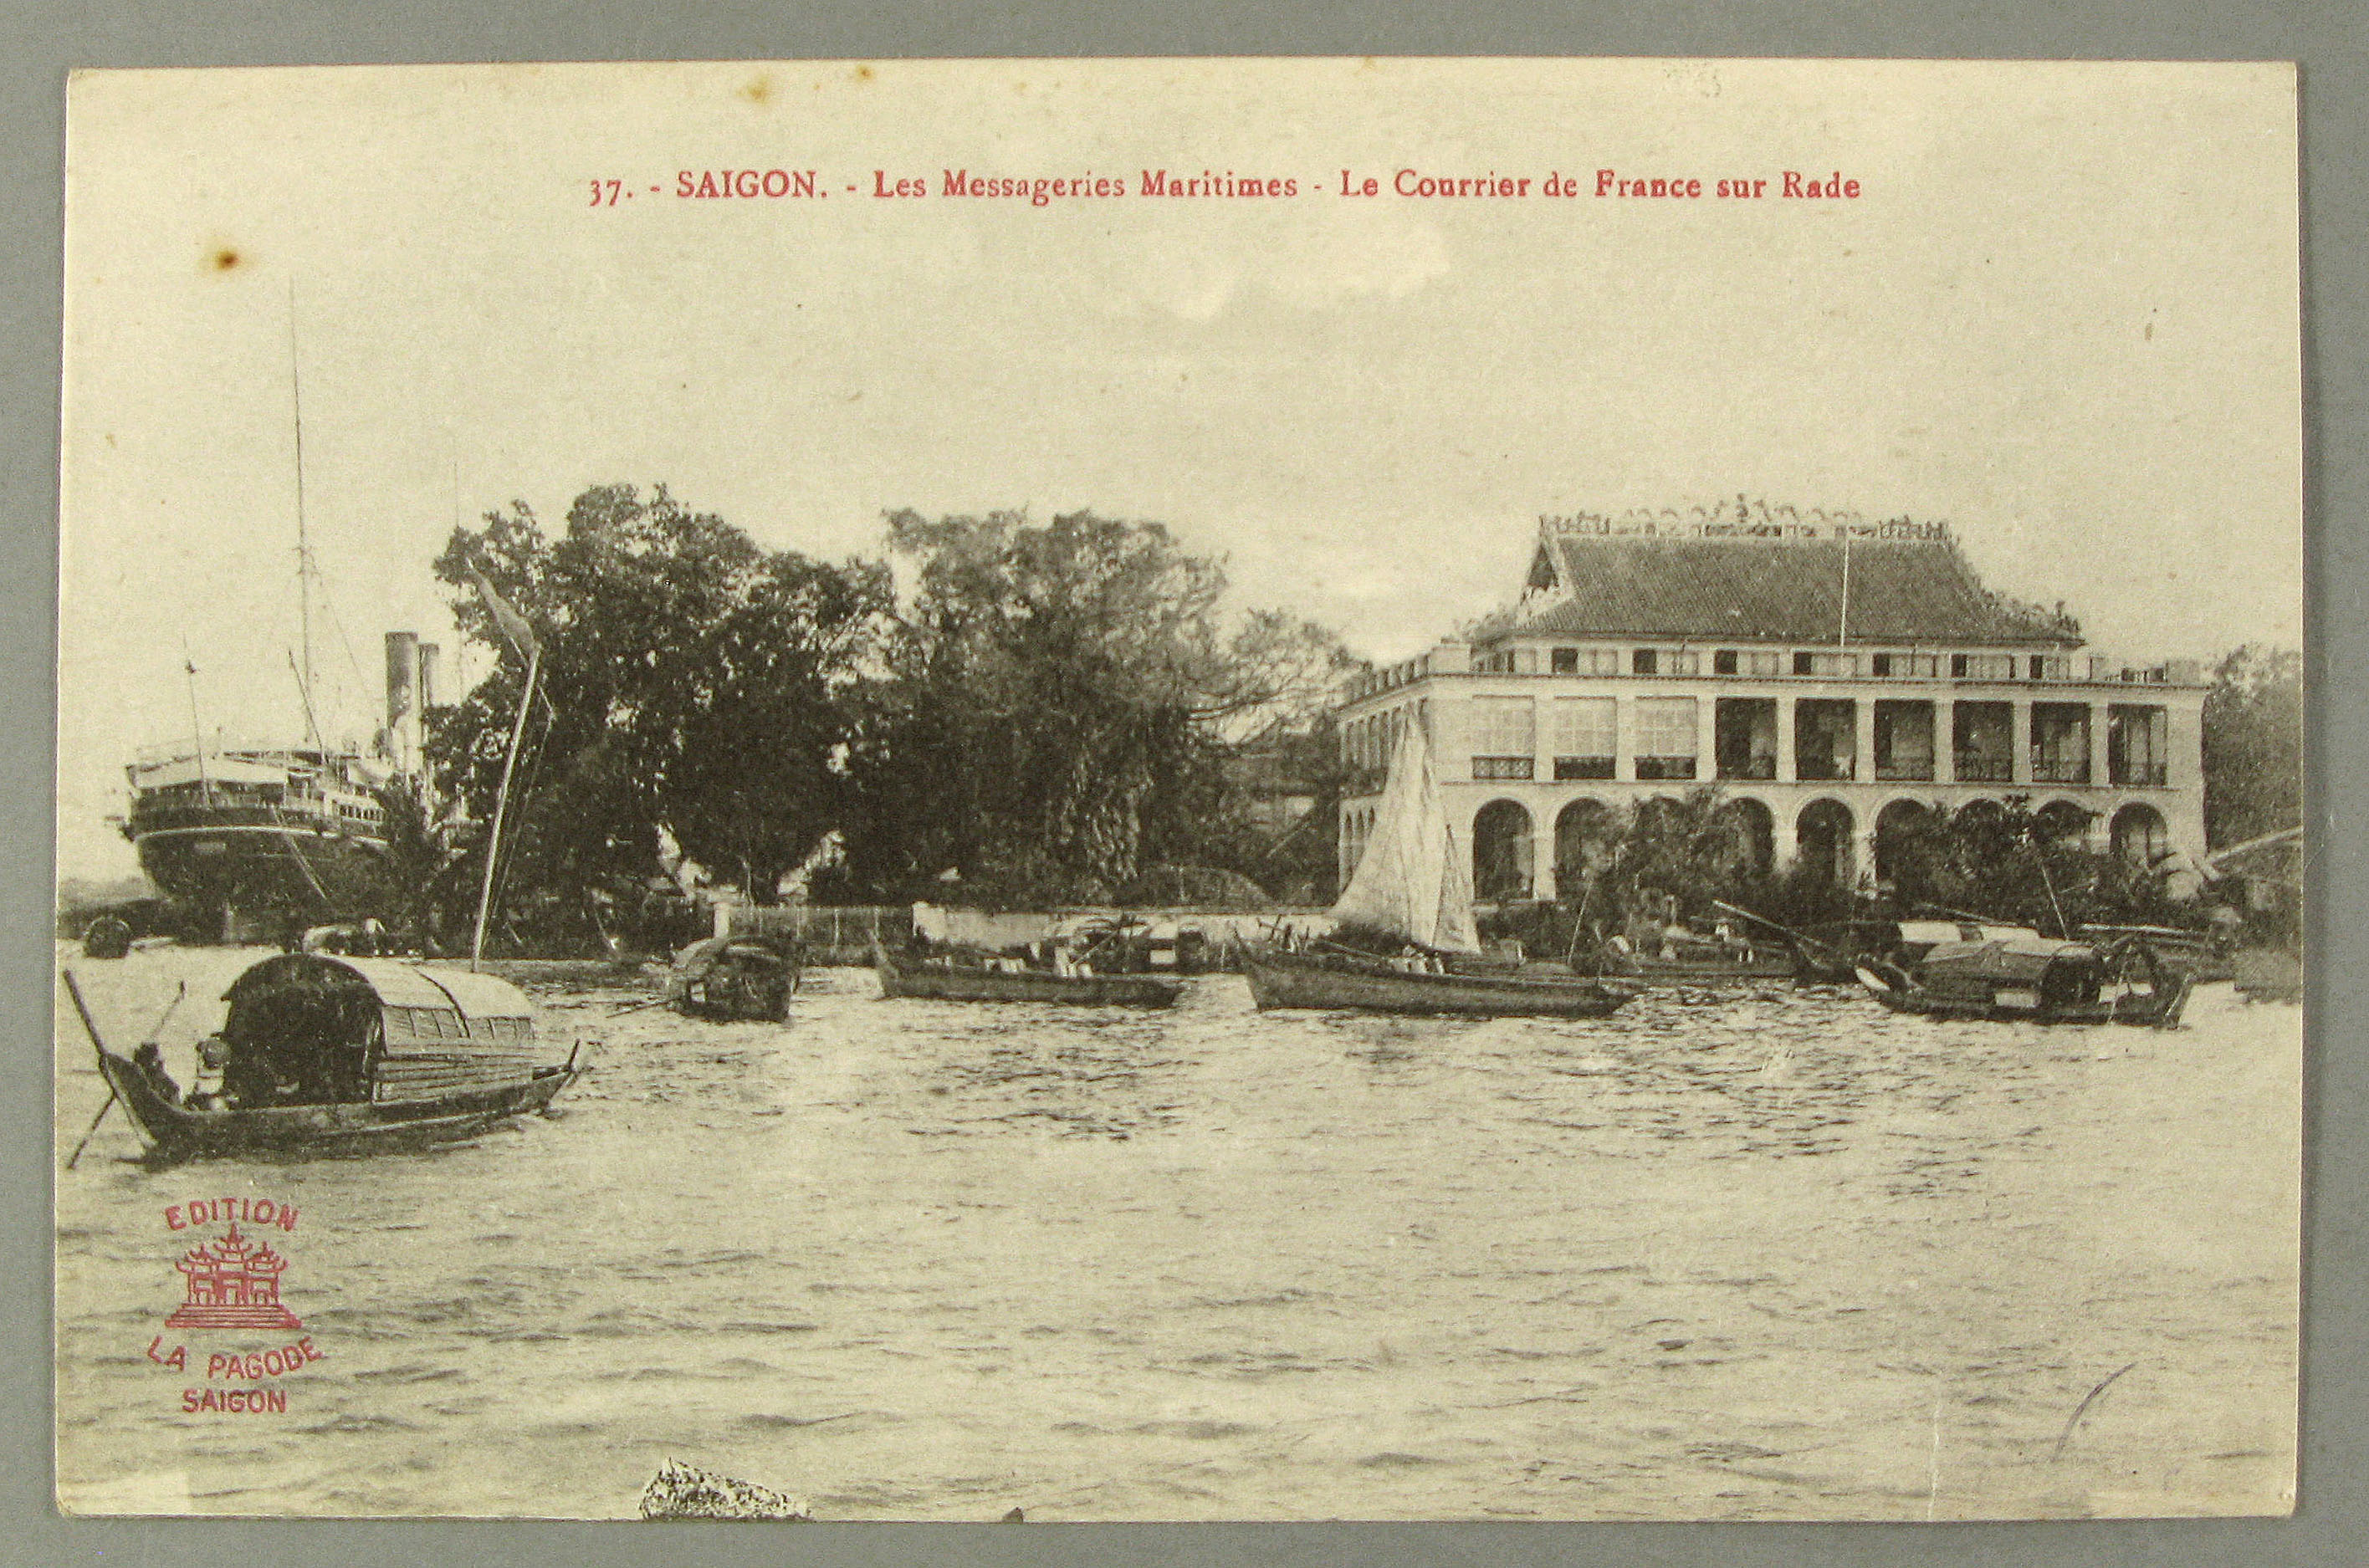 Saïgon. Les Messageries maritimes. Le courrier de France sur rade ; édition La Pagode (s.d)